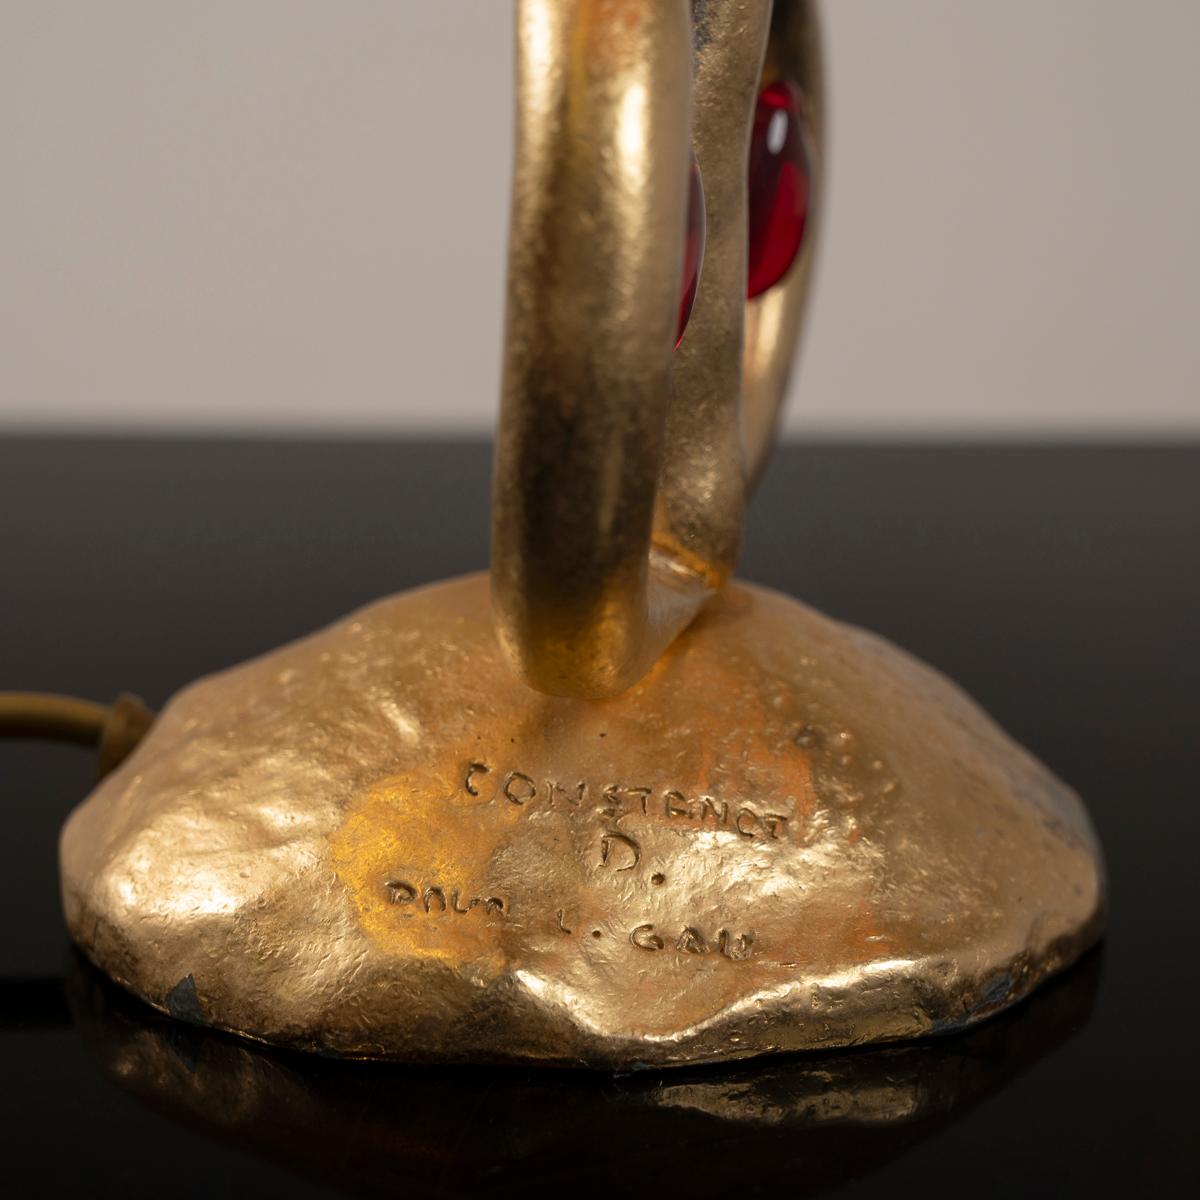 Lampe de table de la maison Louis Maison métal dorée signé Louis Gau et Constance D.

Hauteur : 65 cm diamètre : 30 cm